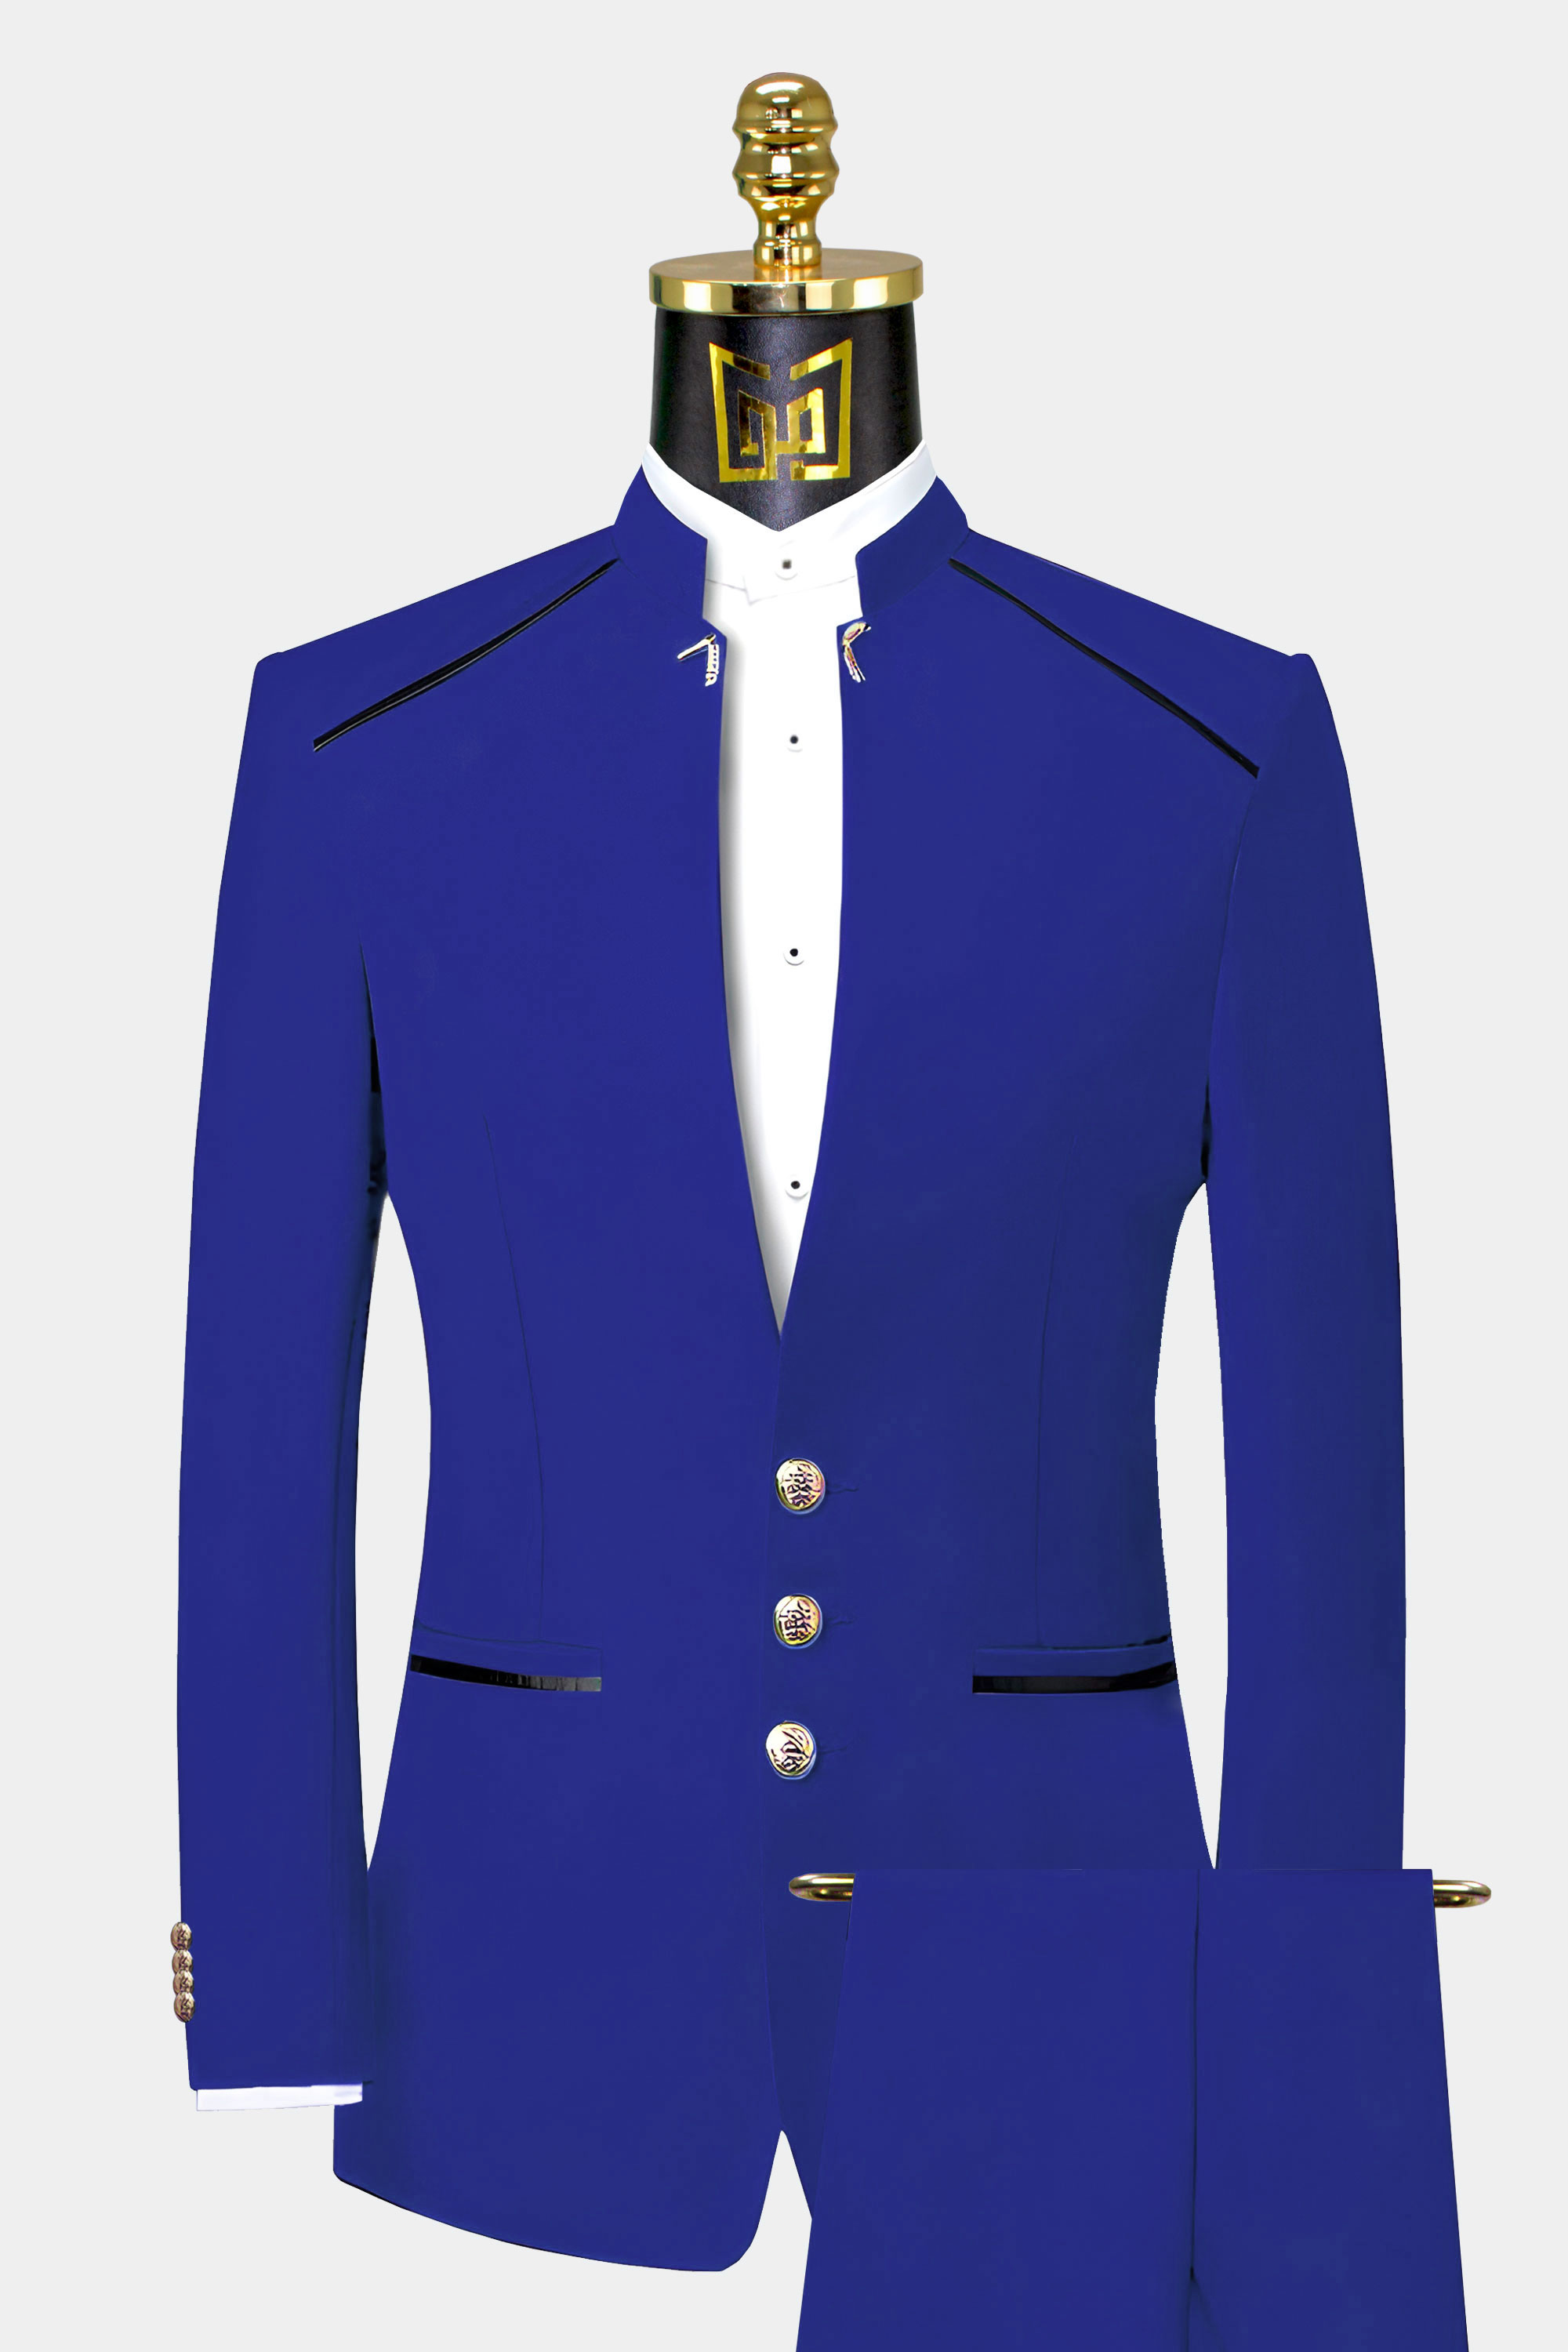 Blue Mandarin Collar Suit - 2 Piece